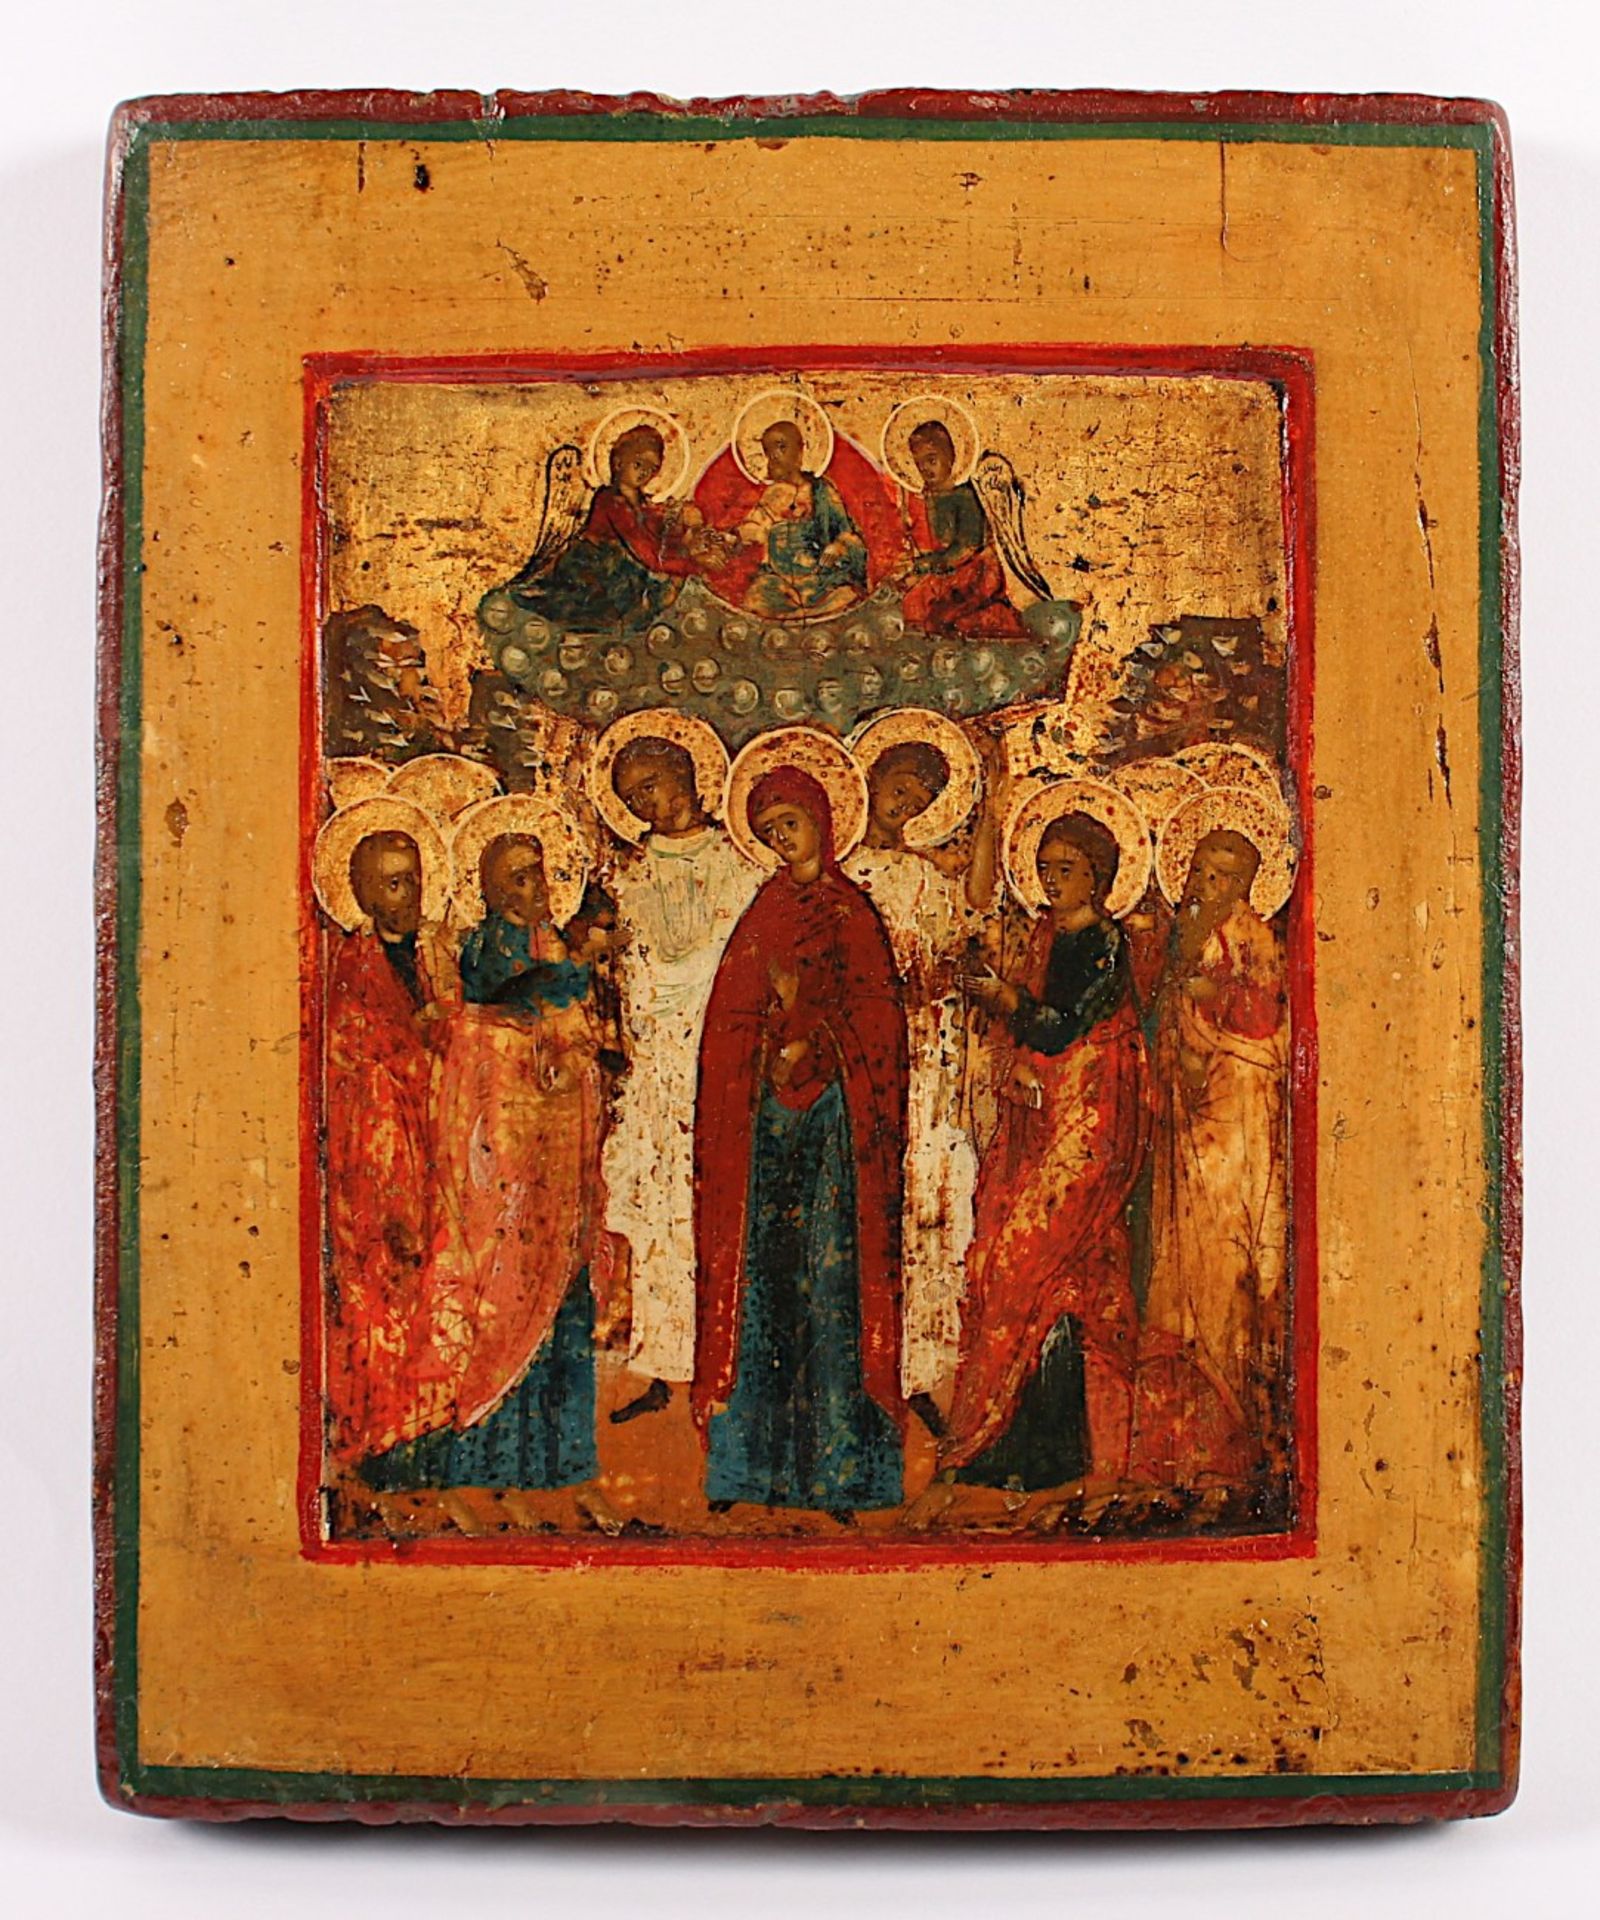 IKONE, "Christi Himmelfahrt", Tempera/Holz, 22 x 18, Goldhöhungen, oben in der Mitte auf einer